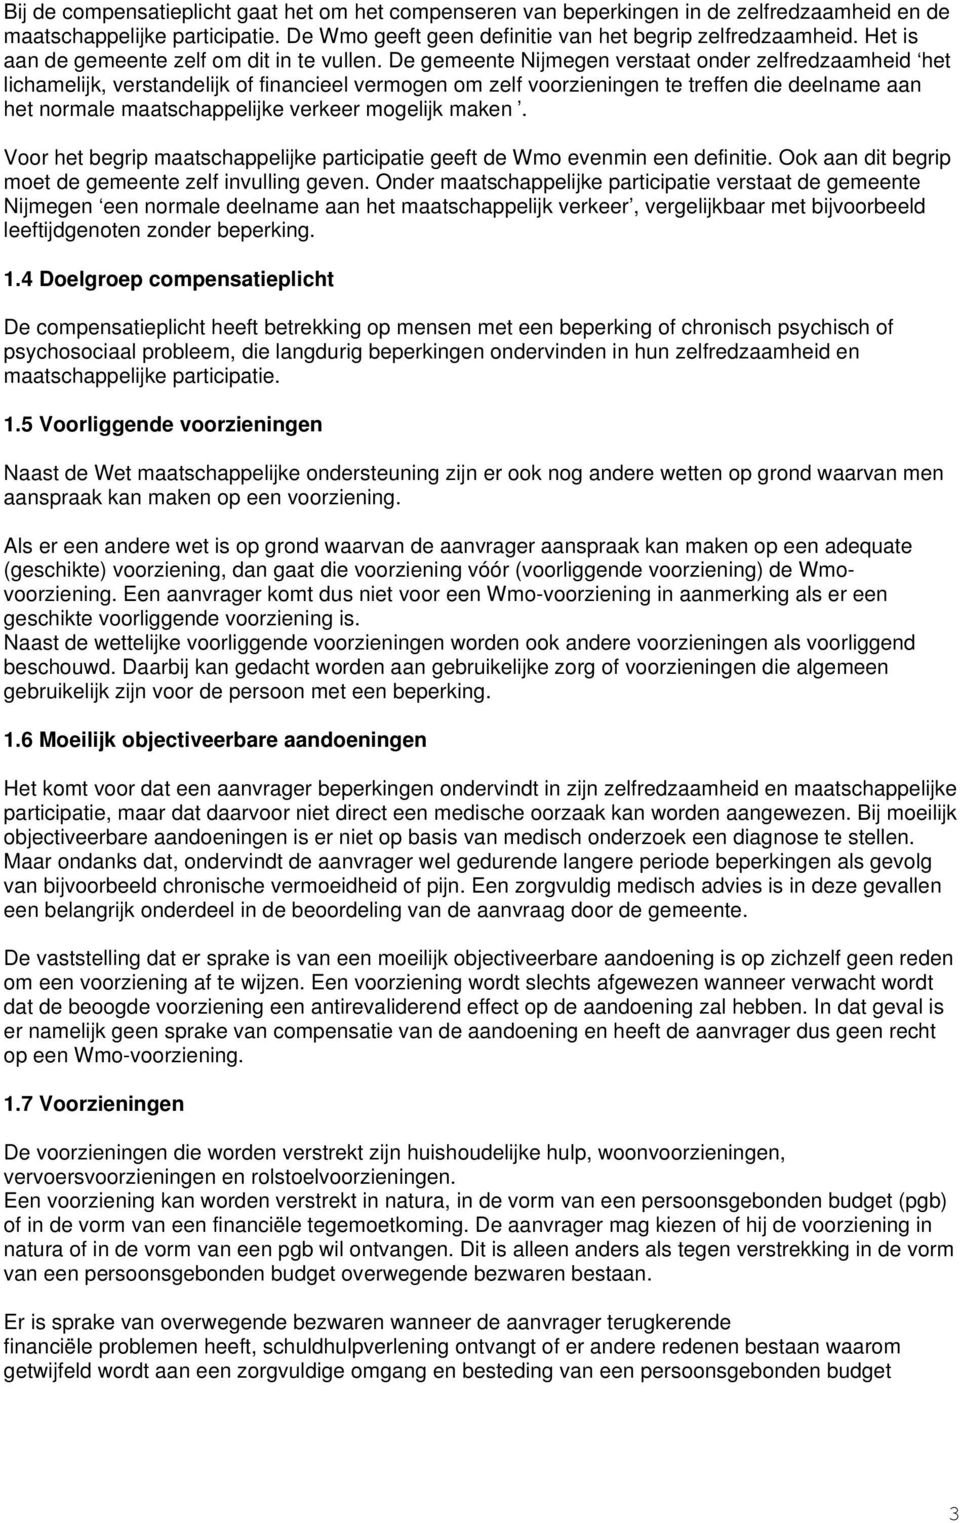 De gemeente Nijmegen verstaat onder zelfredzaamheid het lichamelijk, verstandelijk of financieel vermogen om zelf voorzieningen te treffen die deelname aan het normale maatschappelijke verkeer